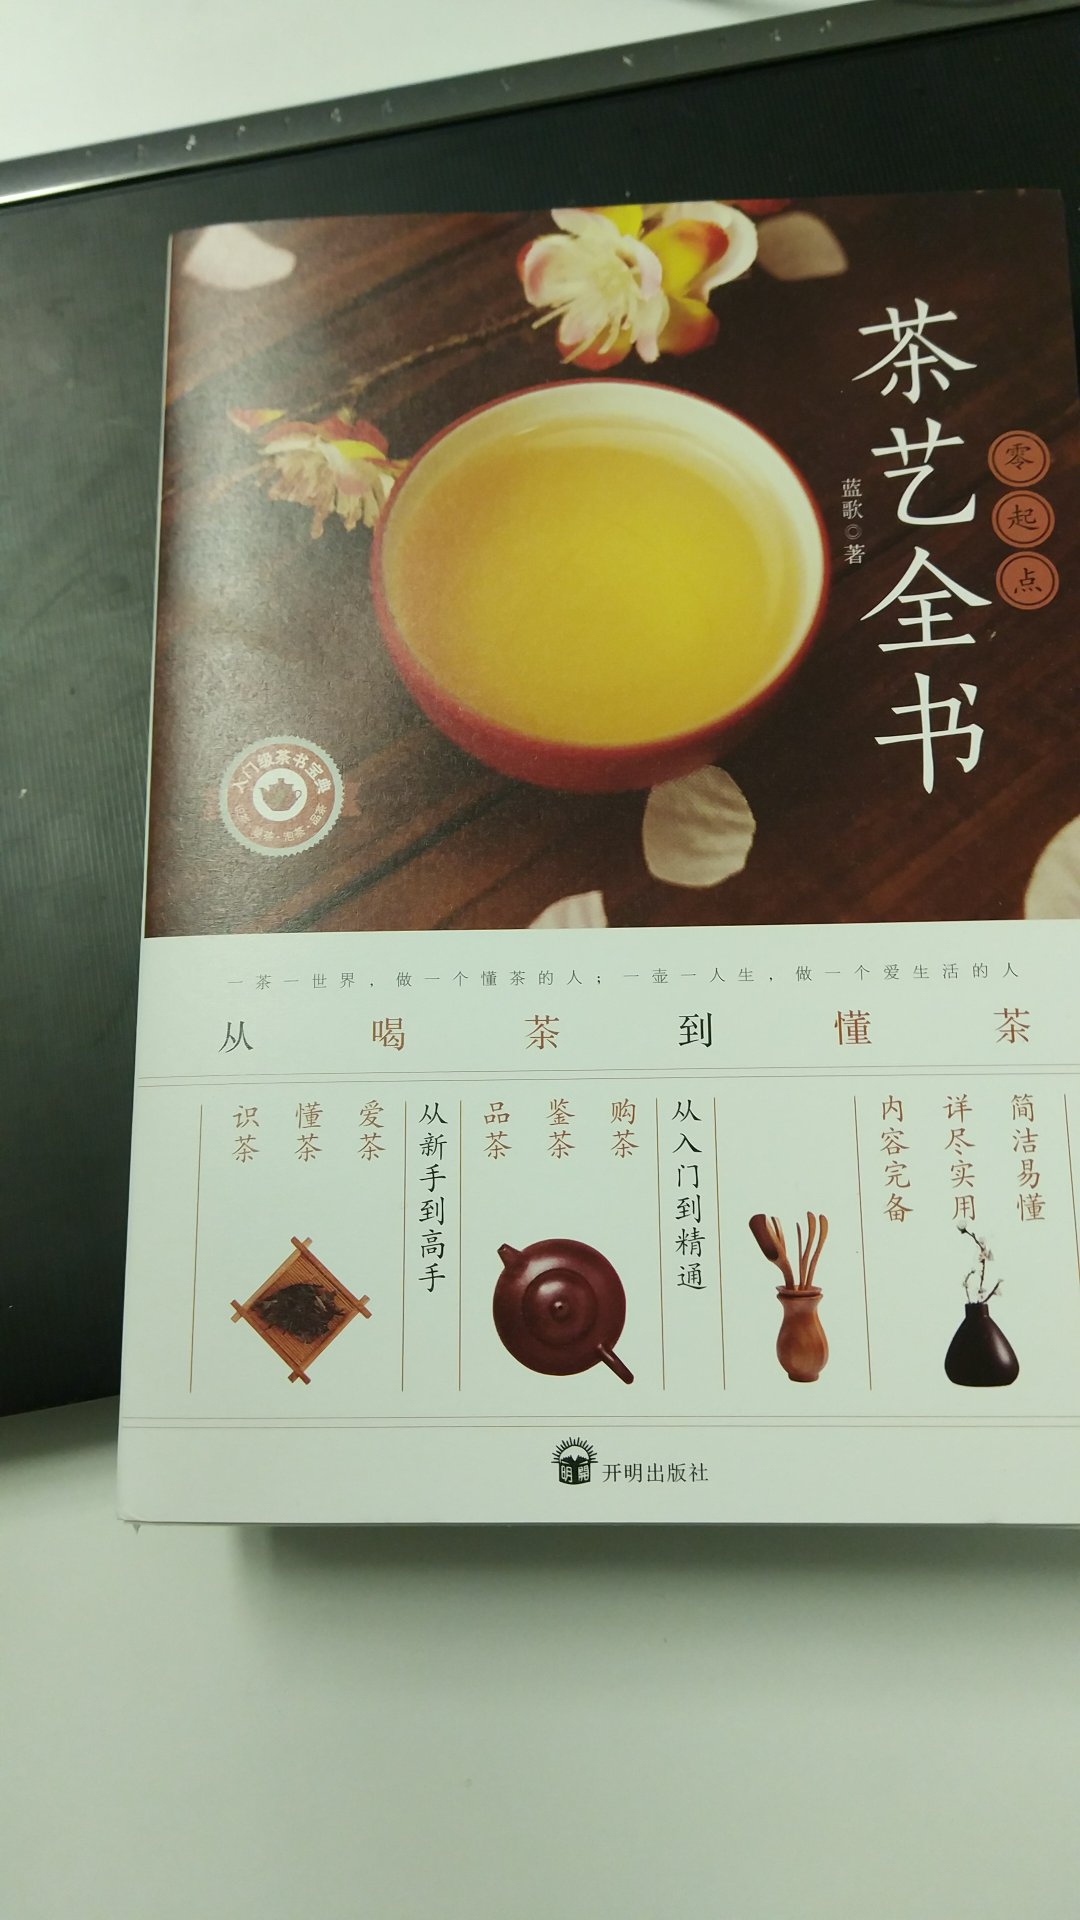 书的纸张比较好，大开本的。内容就是介绍了一些基础的茶叶分类，和不同茶叶的特点。